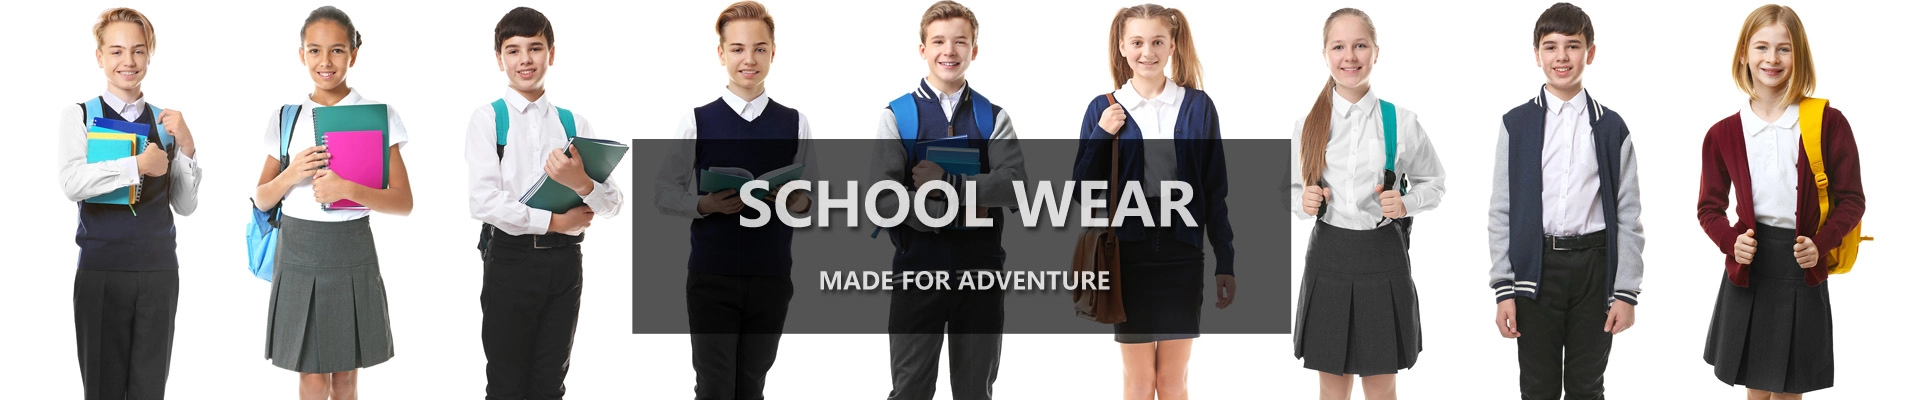 custom made school wear and school uniform